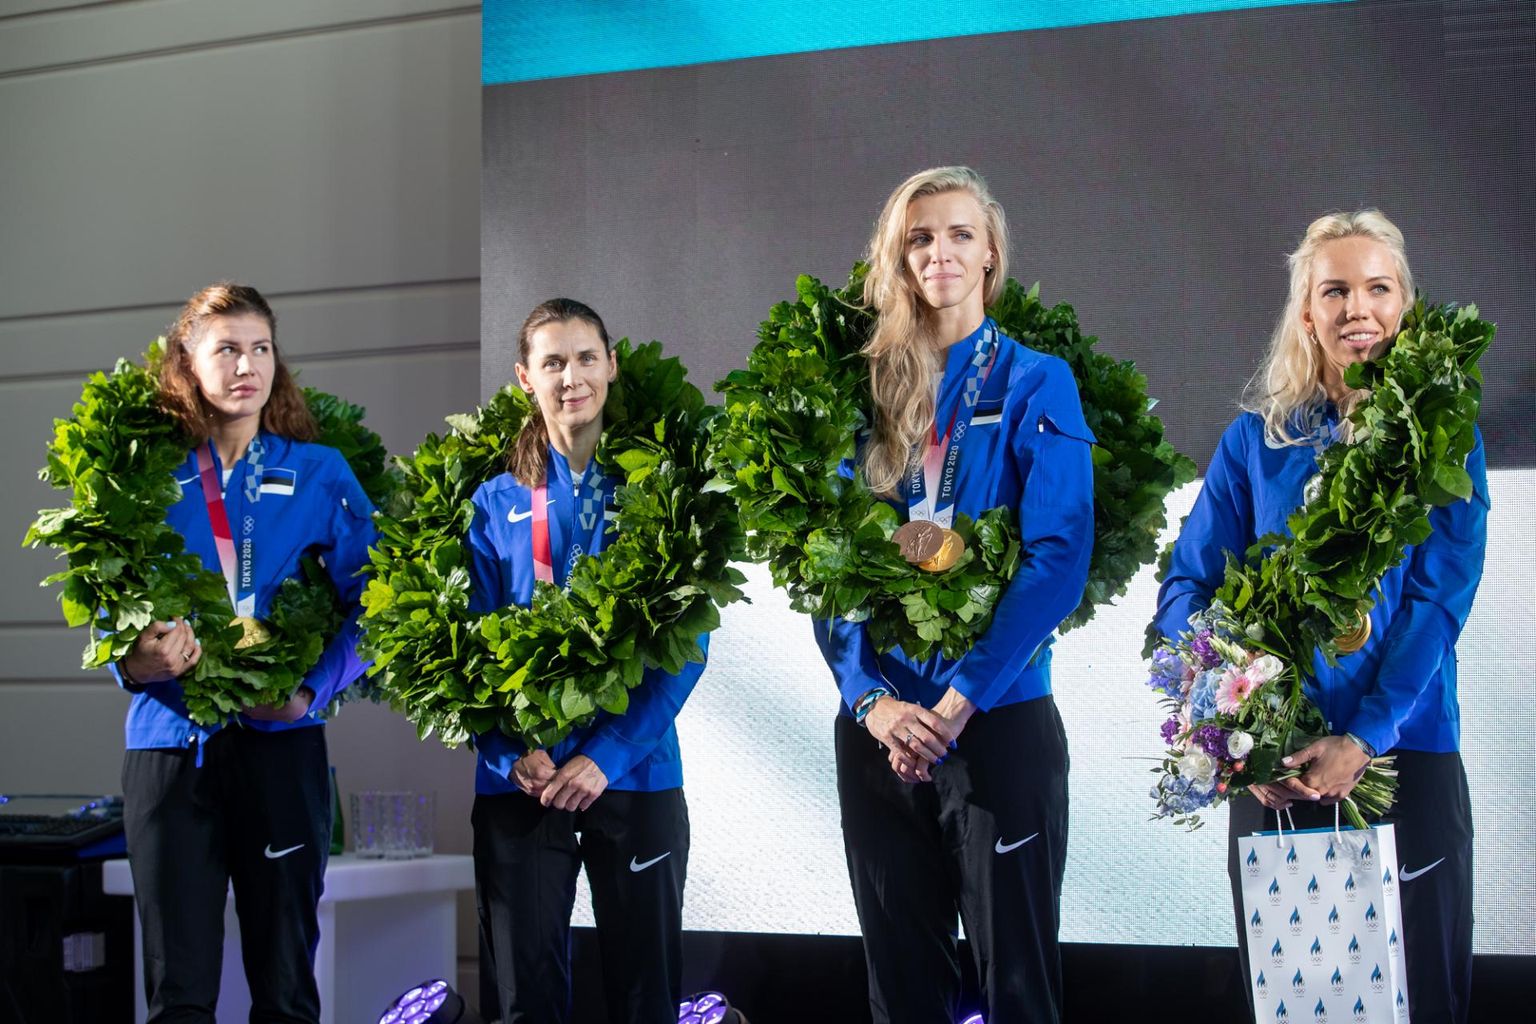 Olümpiavõitjatest Eesti epeenaiskonna vastuvõtt Tallinna lennujaamas. Vasakult Julia Beljajeva, Irina Embrich, Katrina Lehis ja Erika Kirpu.